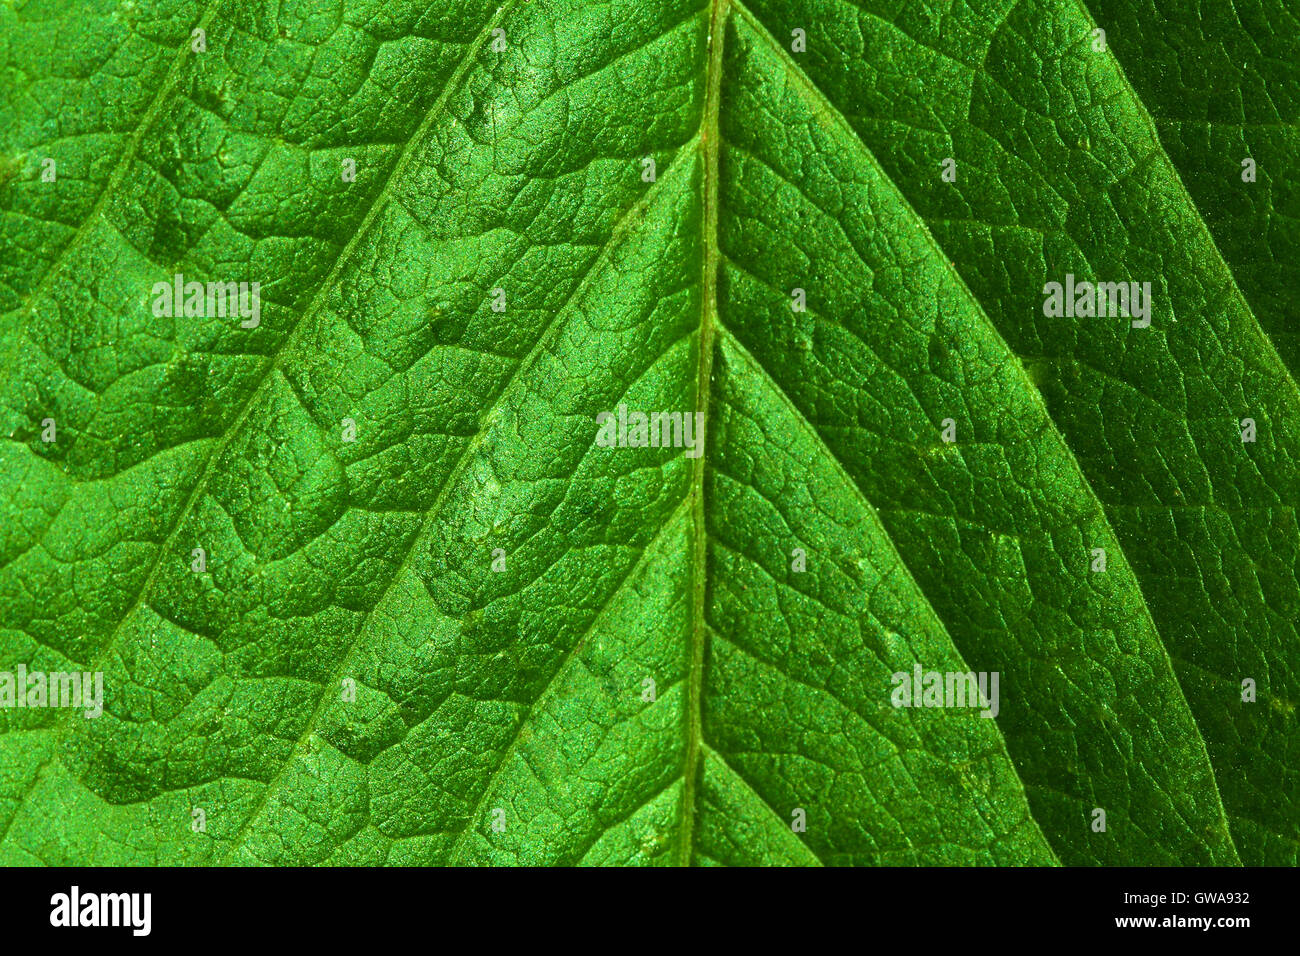 Naturaleza abstracta Ecological Green antecedentes: closeup macro de superficie foliar fresco con todos los detalles visibles. Foto de stock